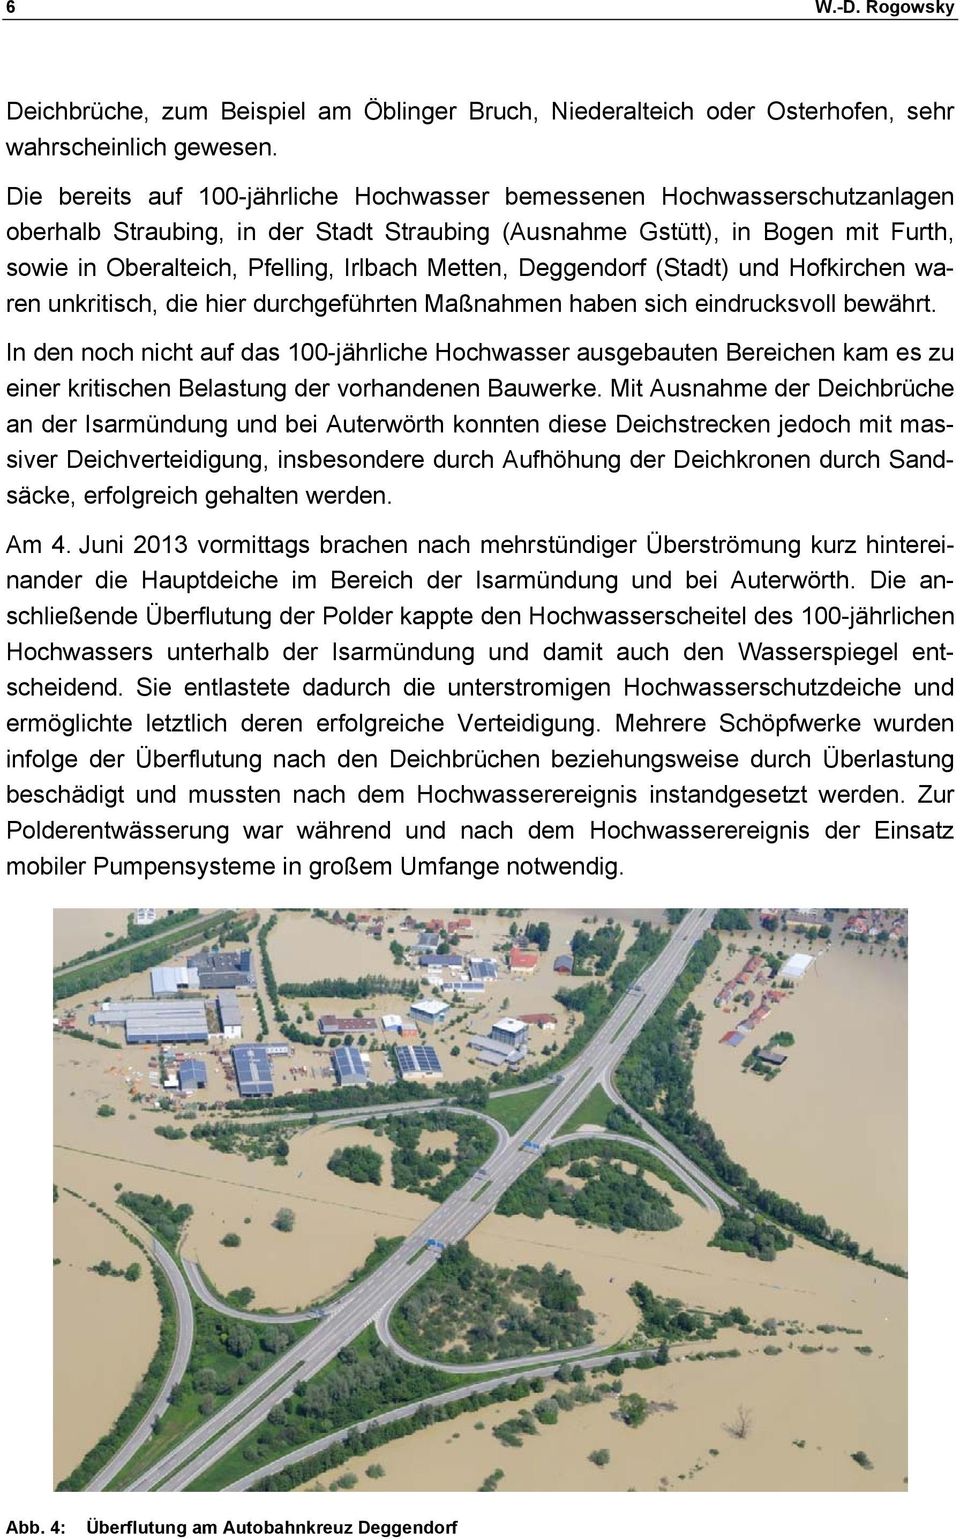 Metten, Deggendorf (Stadt) und Hofkirchen waren unkritisch, die hier durchgeführten Maßnahmen haben sich eindrucksvoll bewährt.